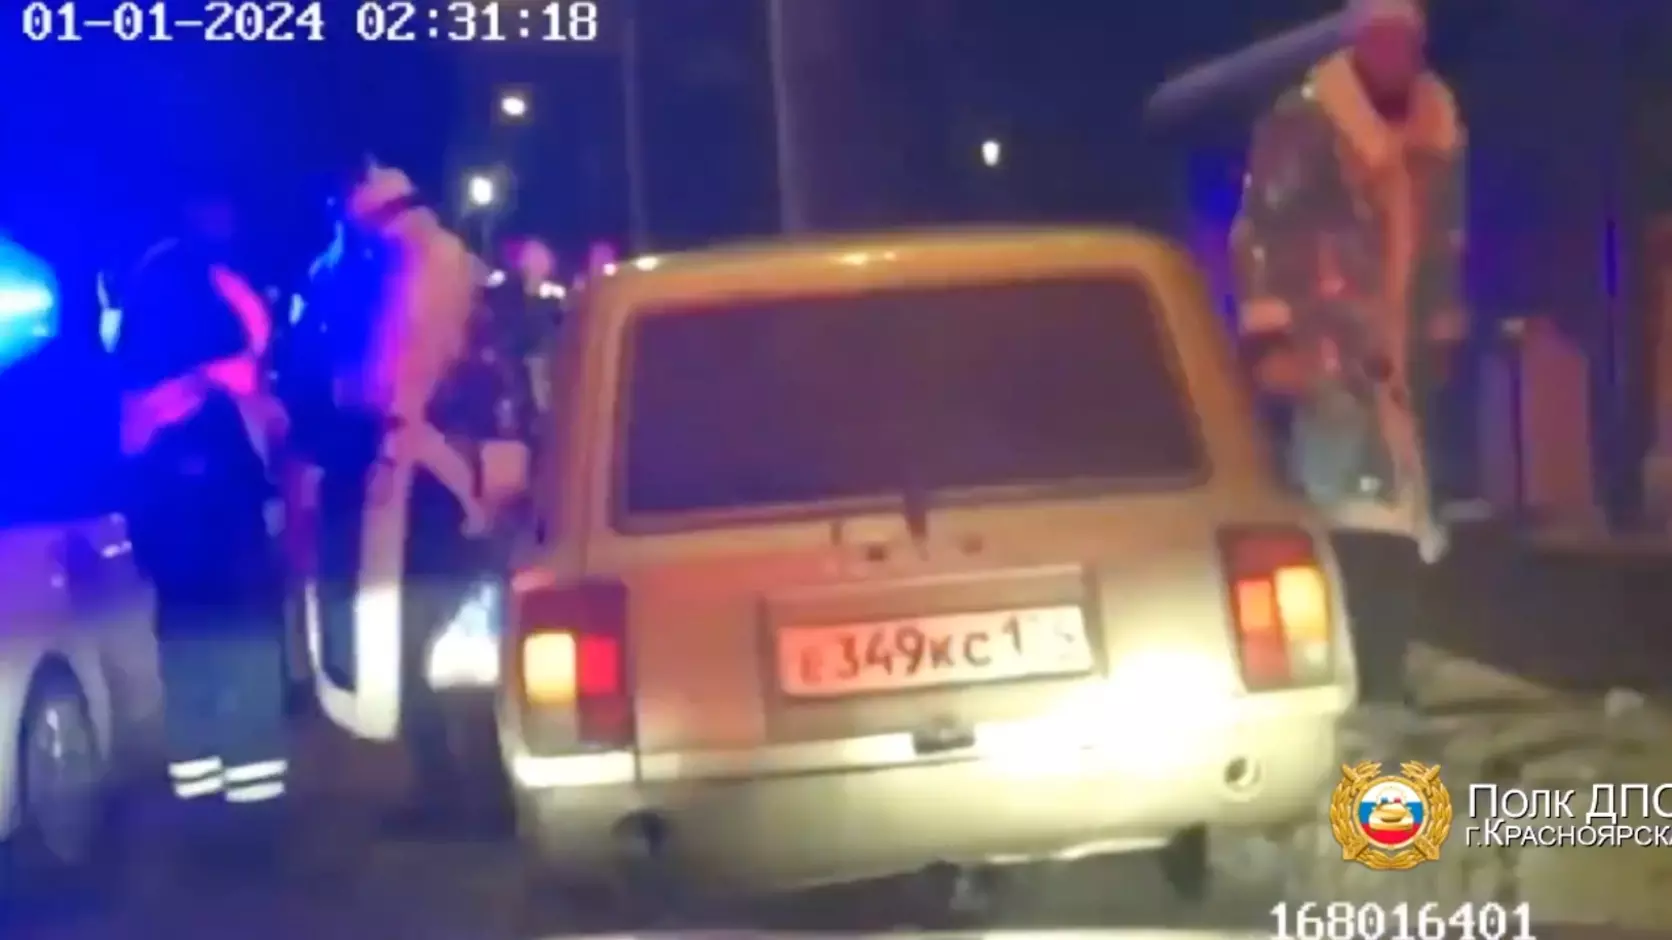 Красноярские инспекторы задержали пьяного Деда Мороза за рулем «Жигулей»